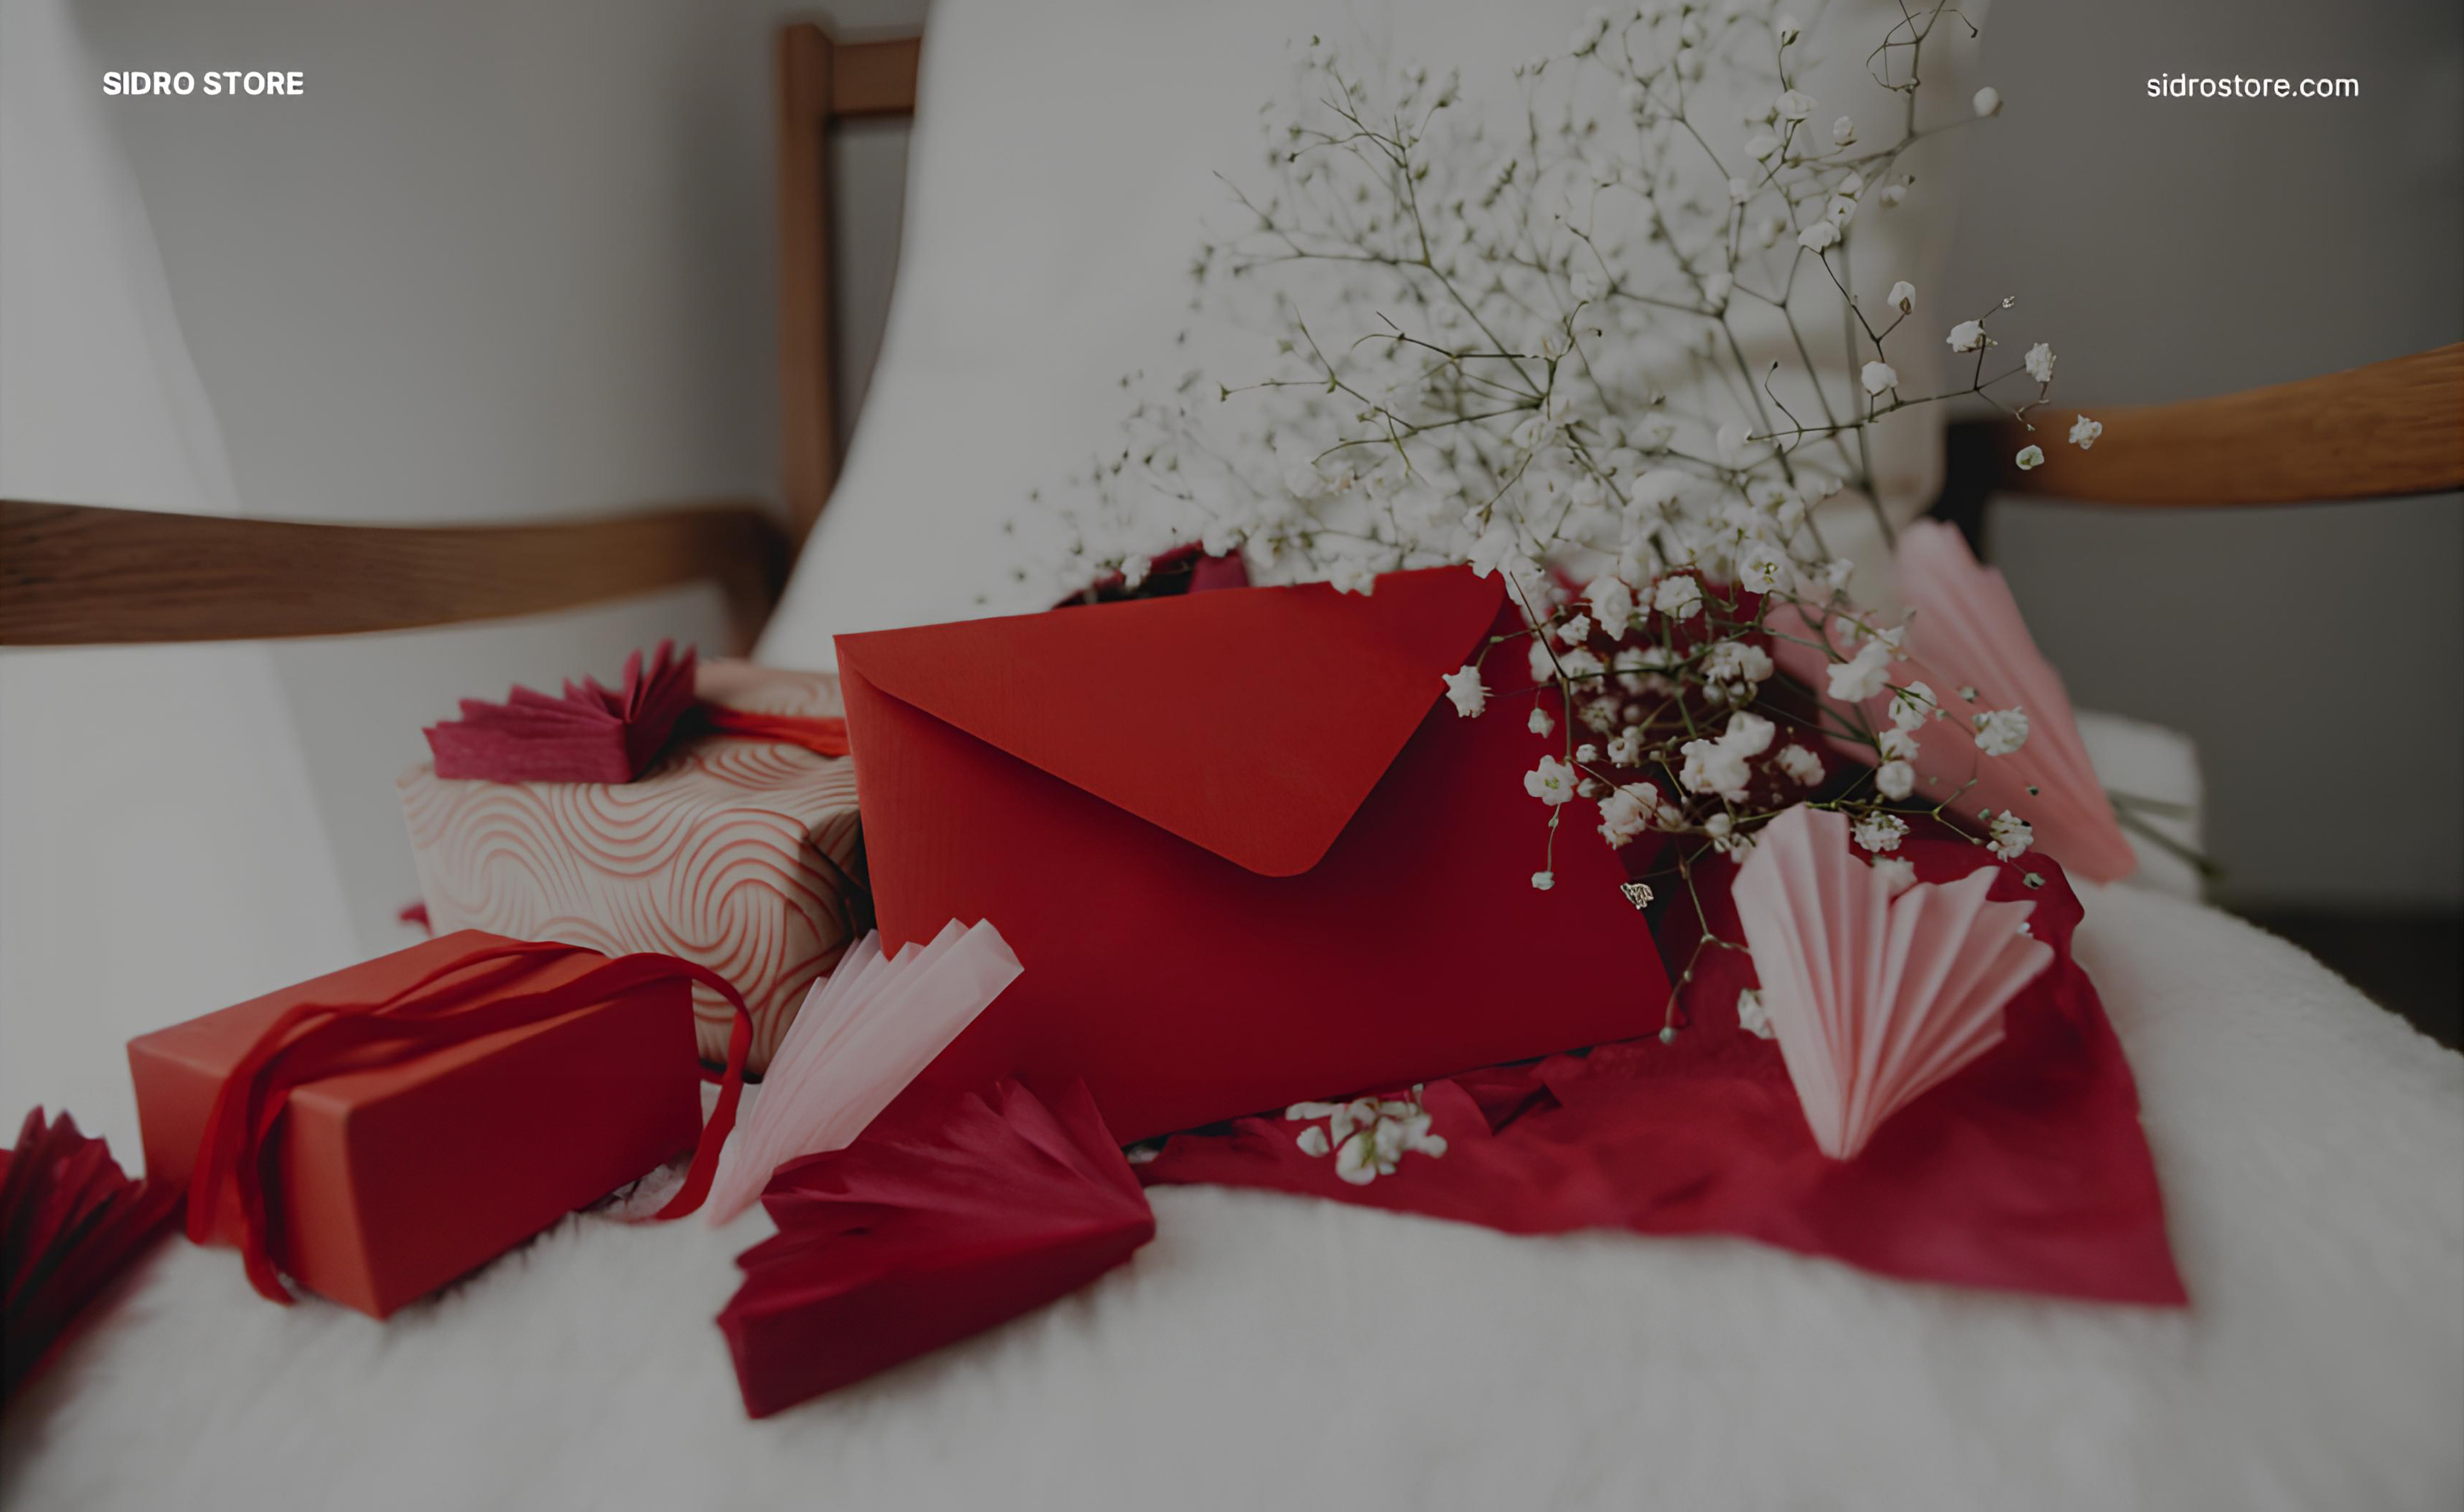 5 интересных и качественных идей подарков на День святого Валентина для нее и для него